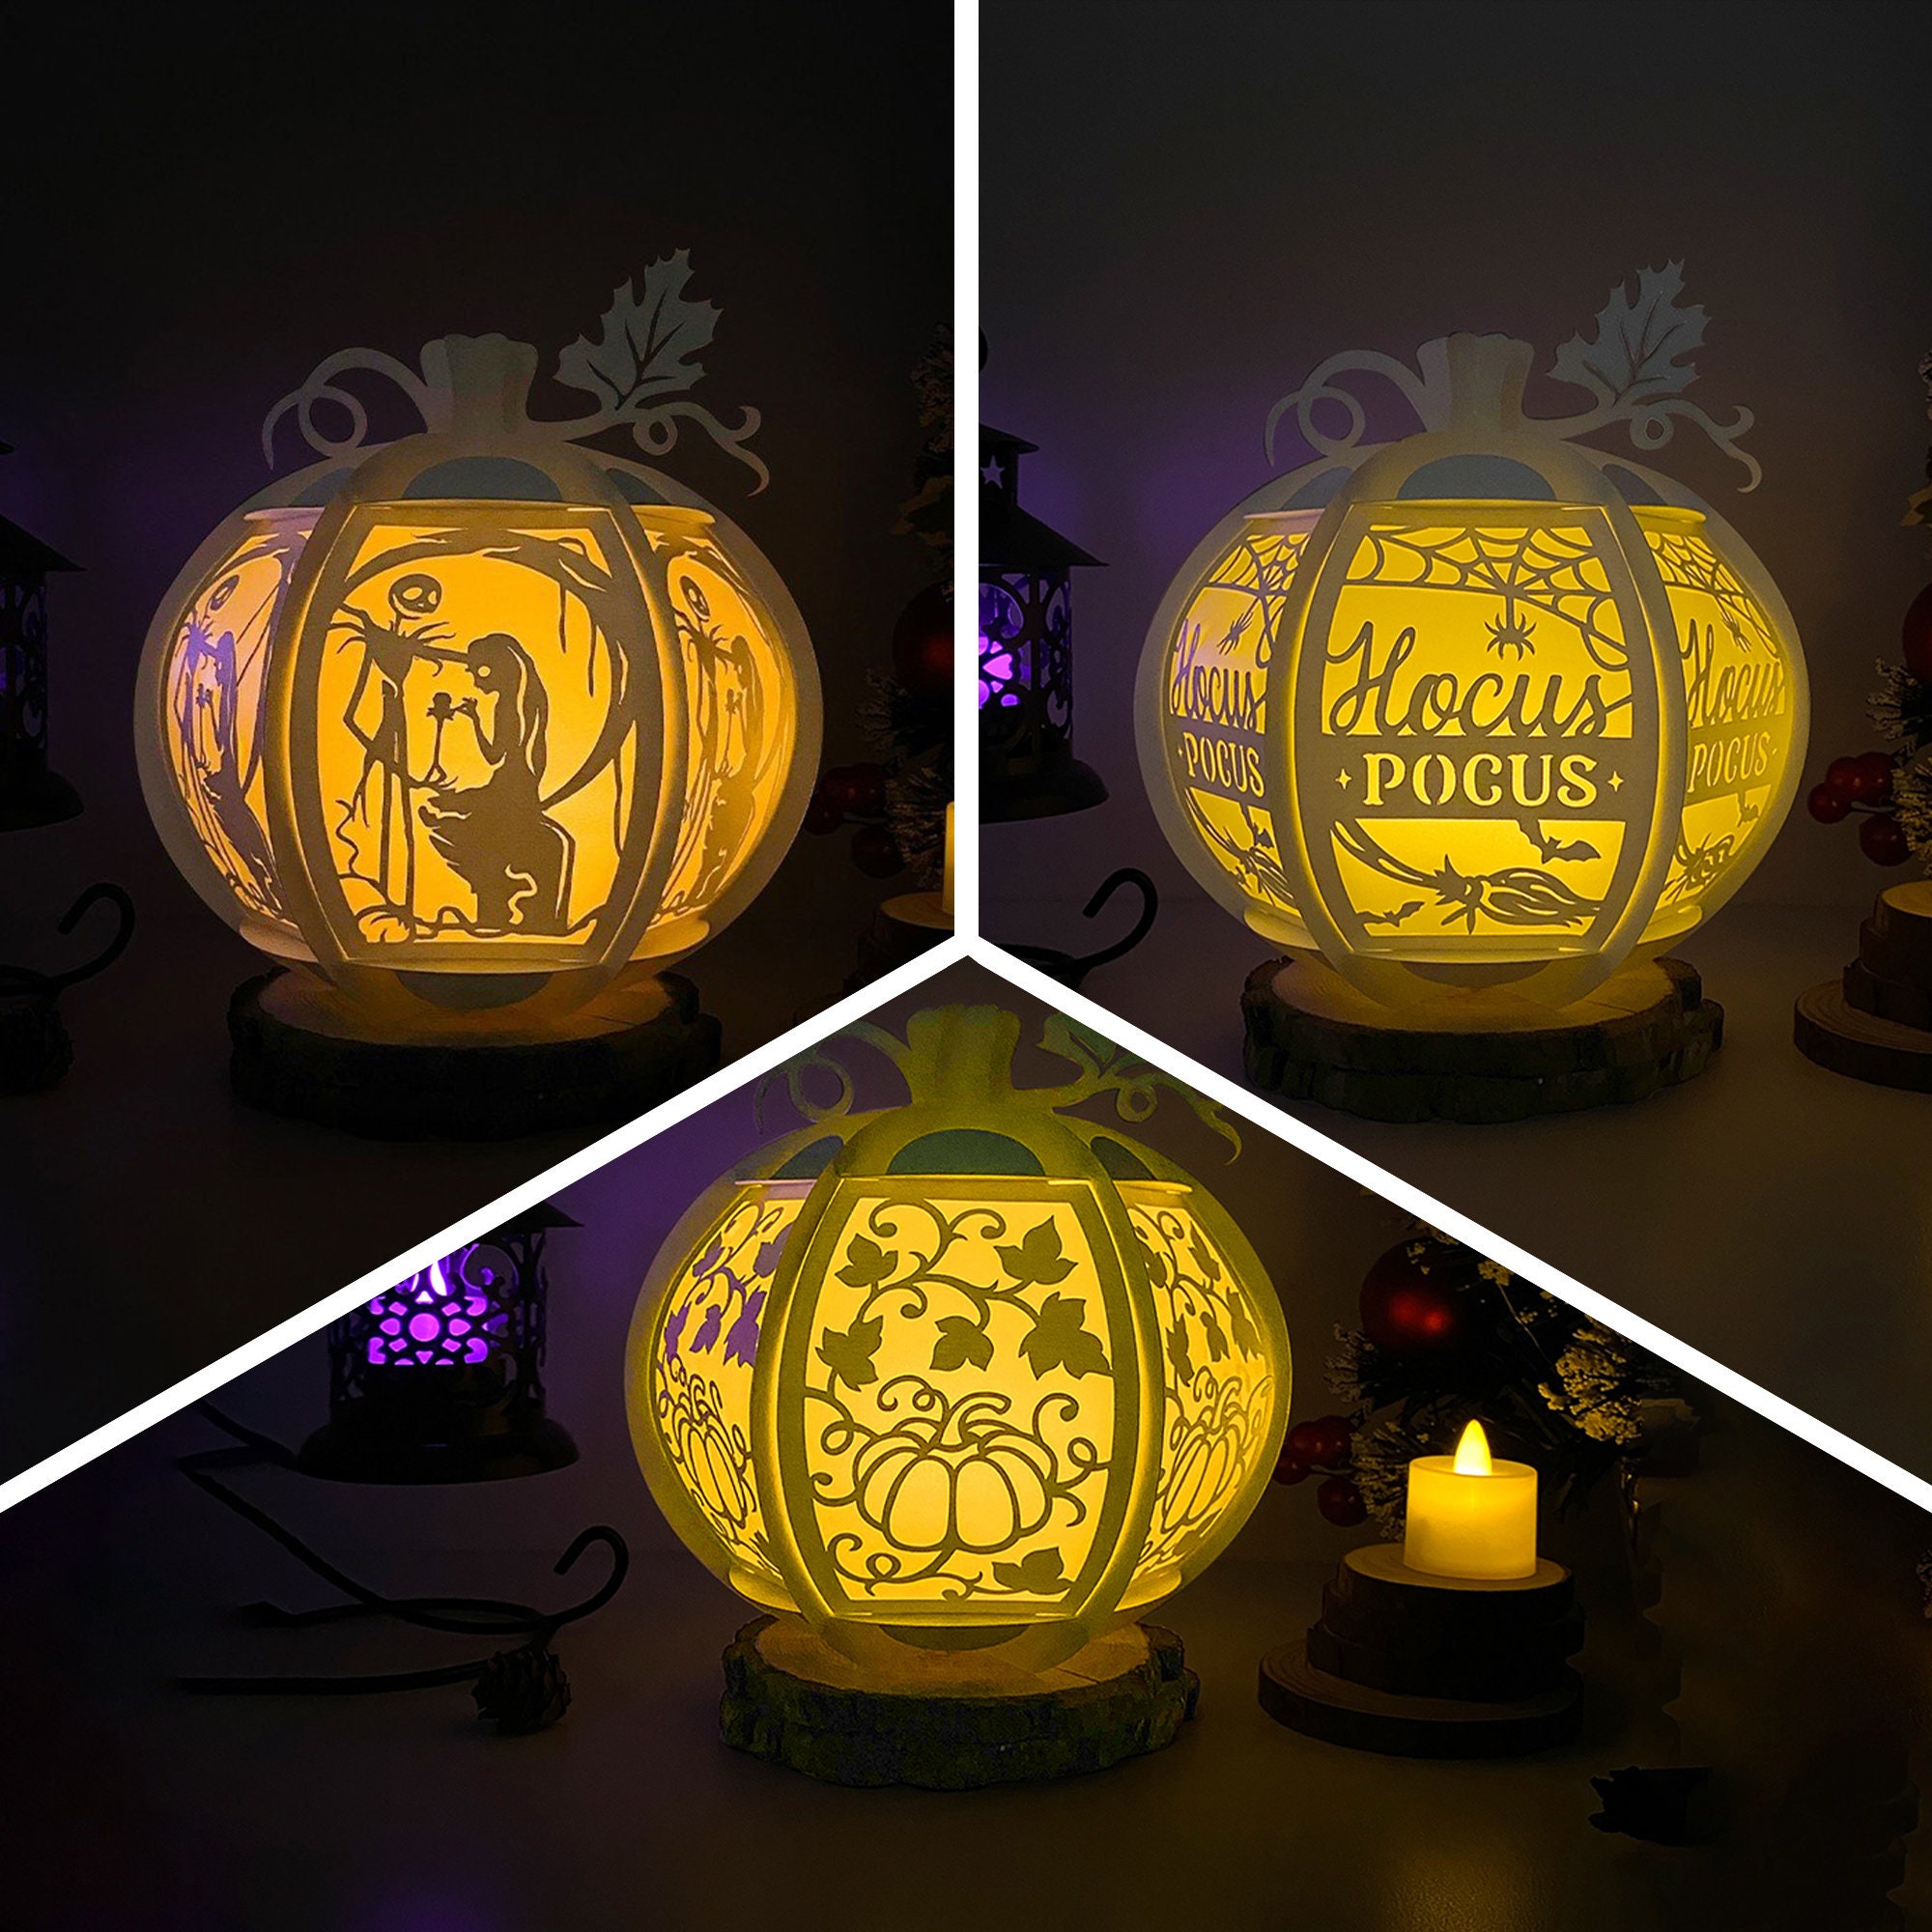 The Cutest Hocus Pocus Pumpkins! - Design Improvised